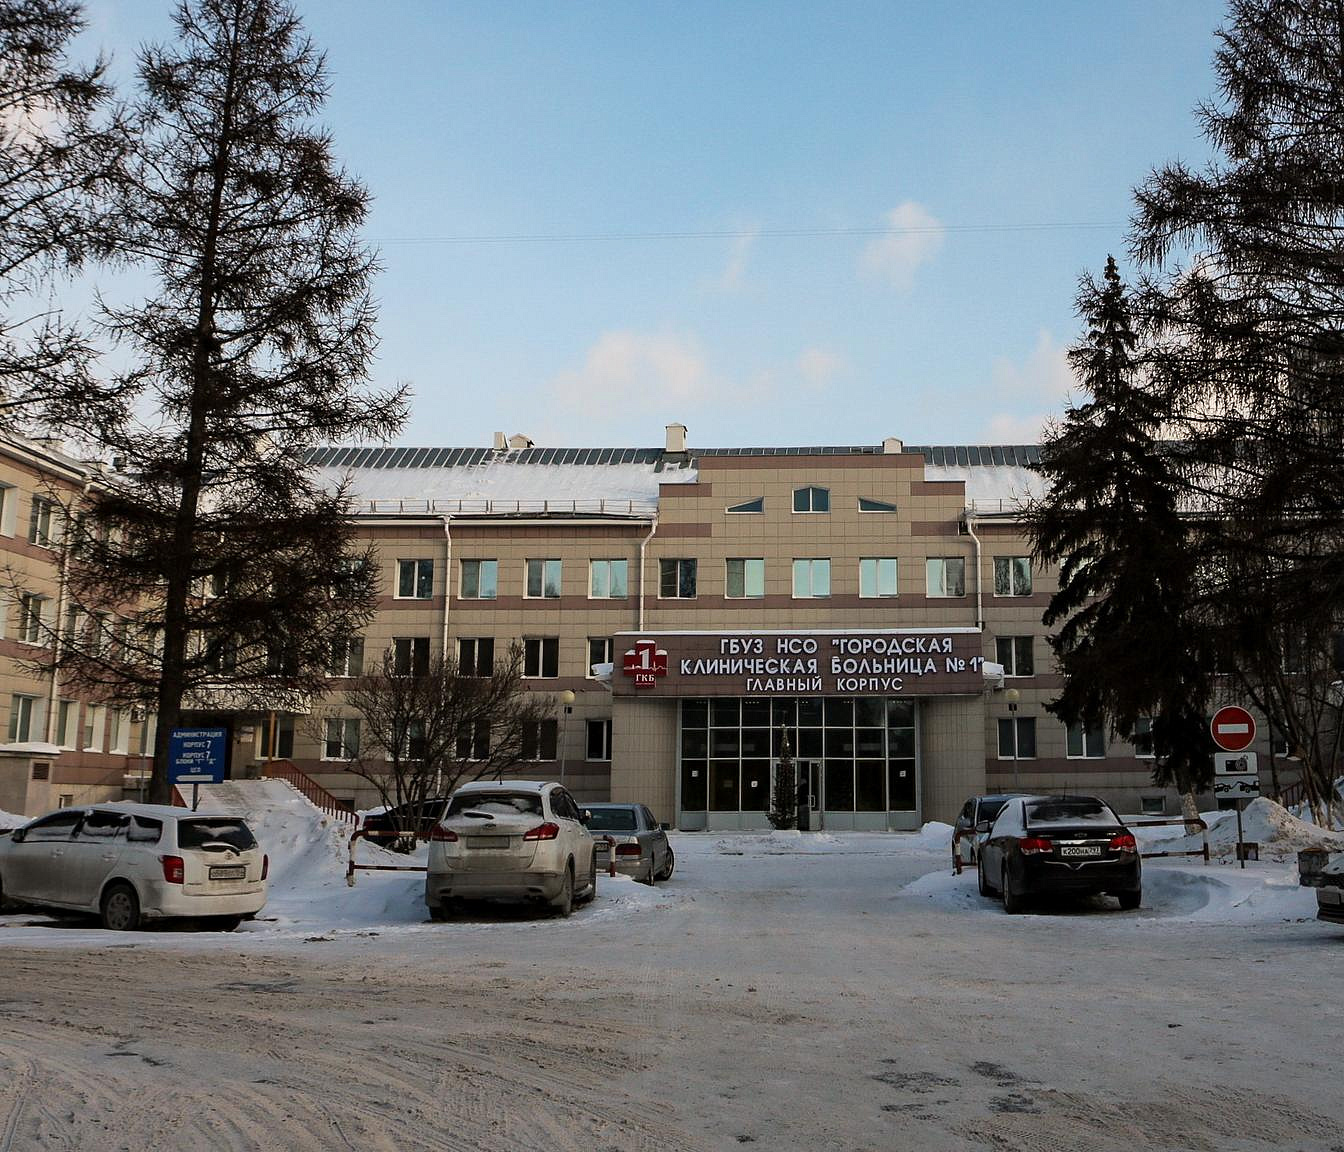 Авангард и медицина: как выглядит больница-памятник в Новосибирске